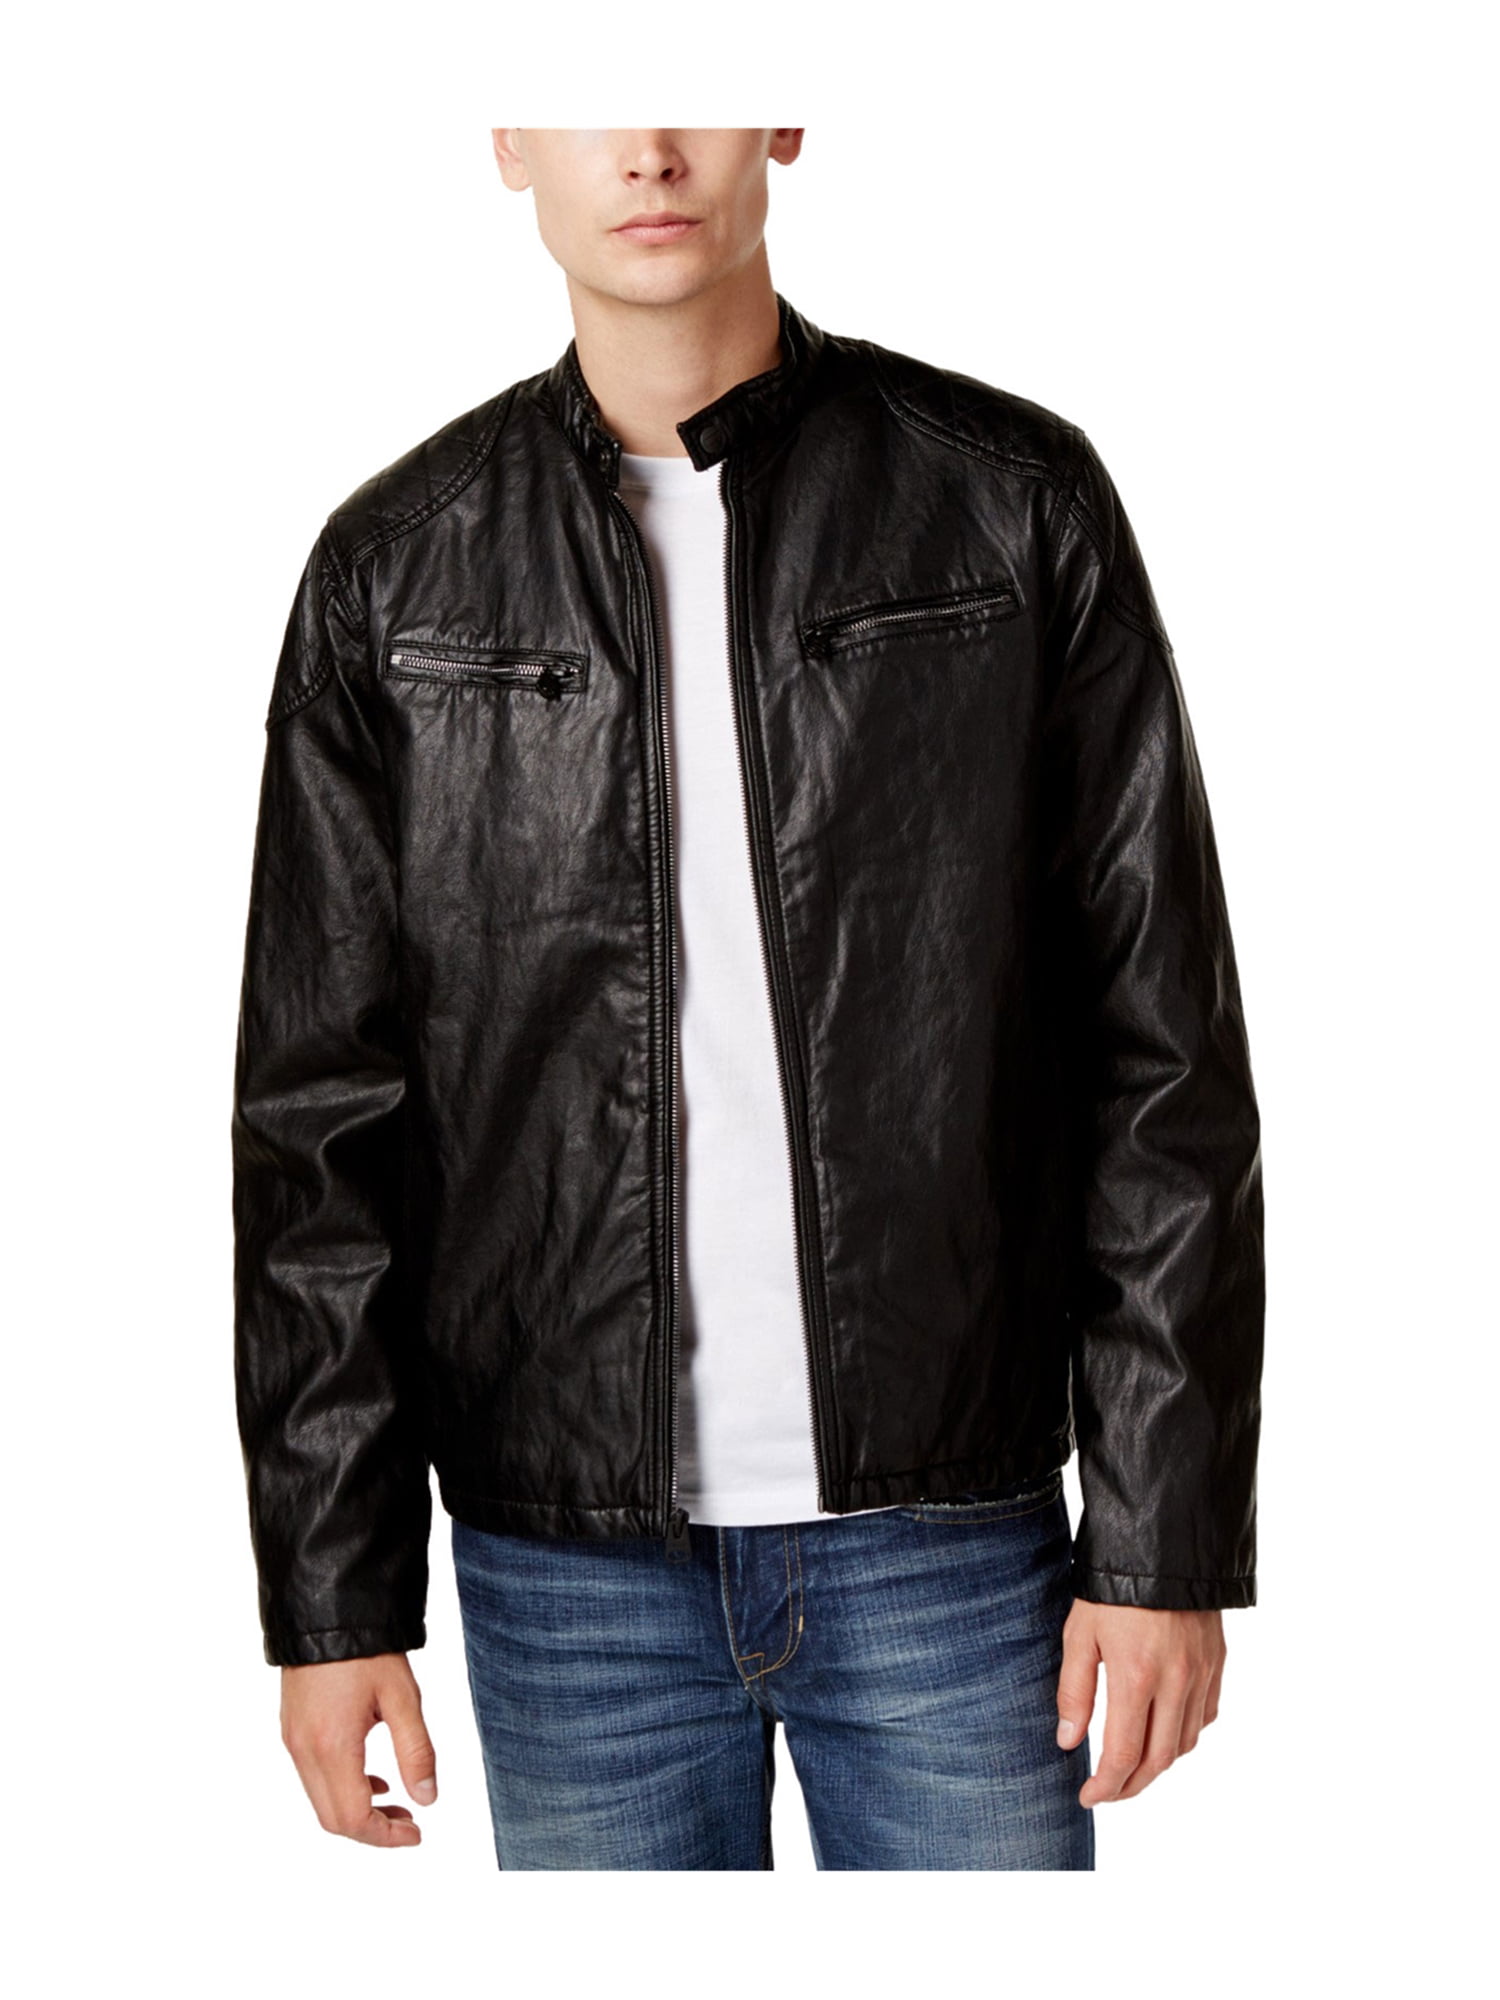 levi's faux leather jacket mens